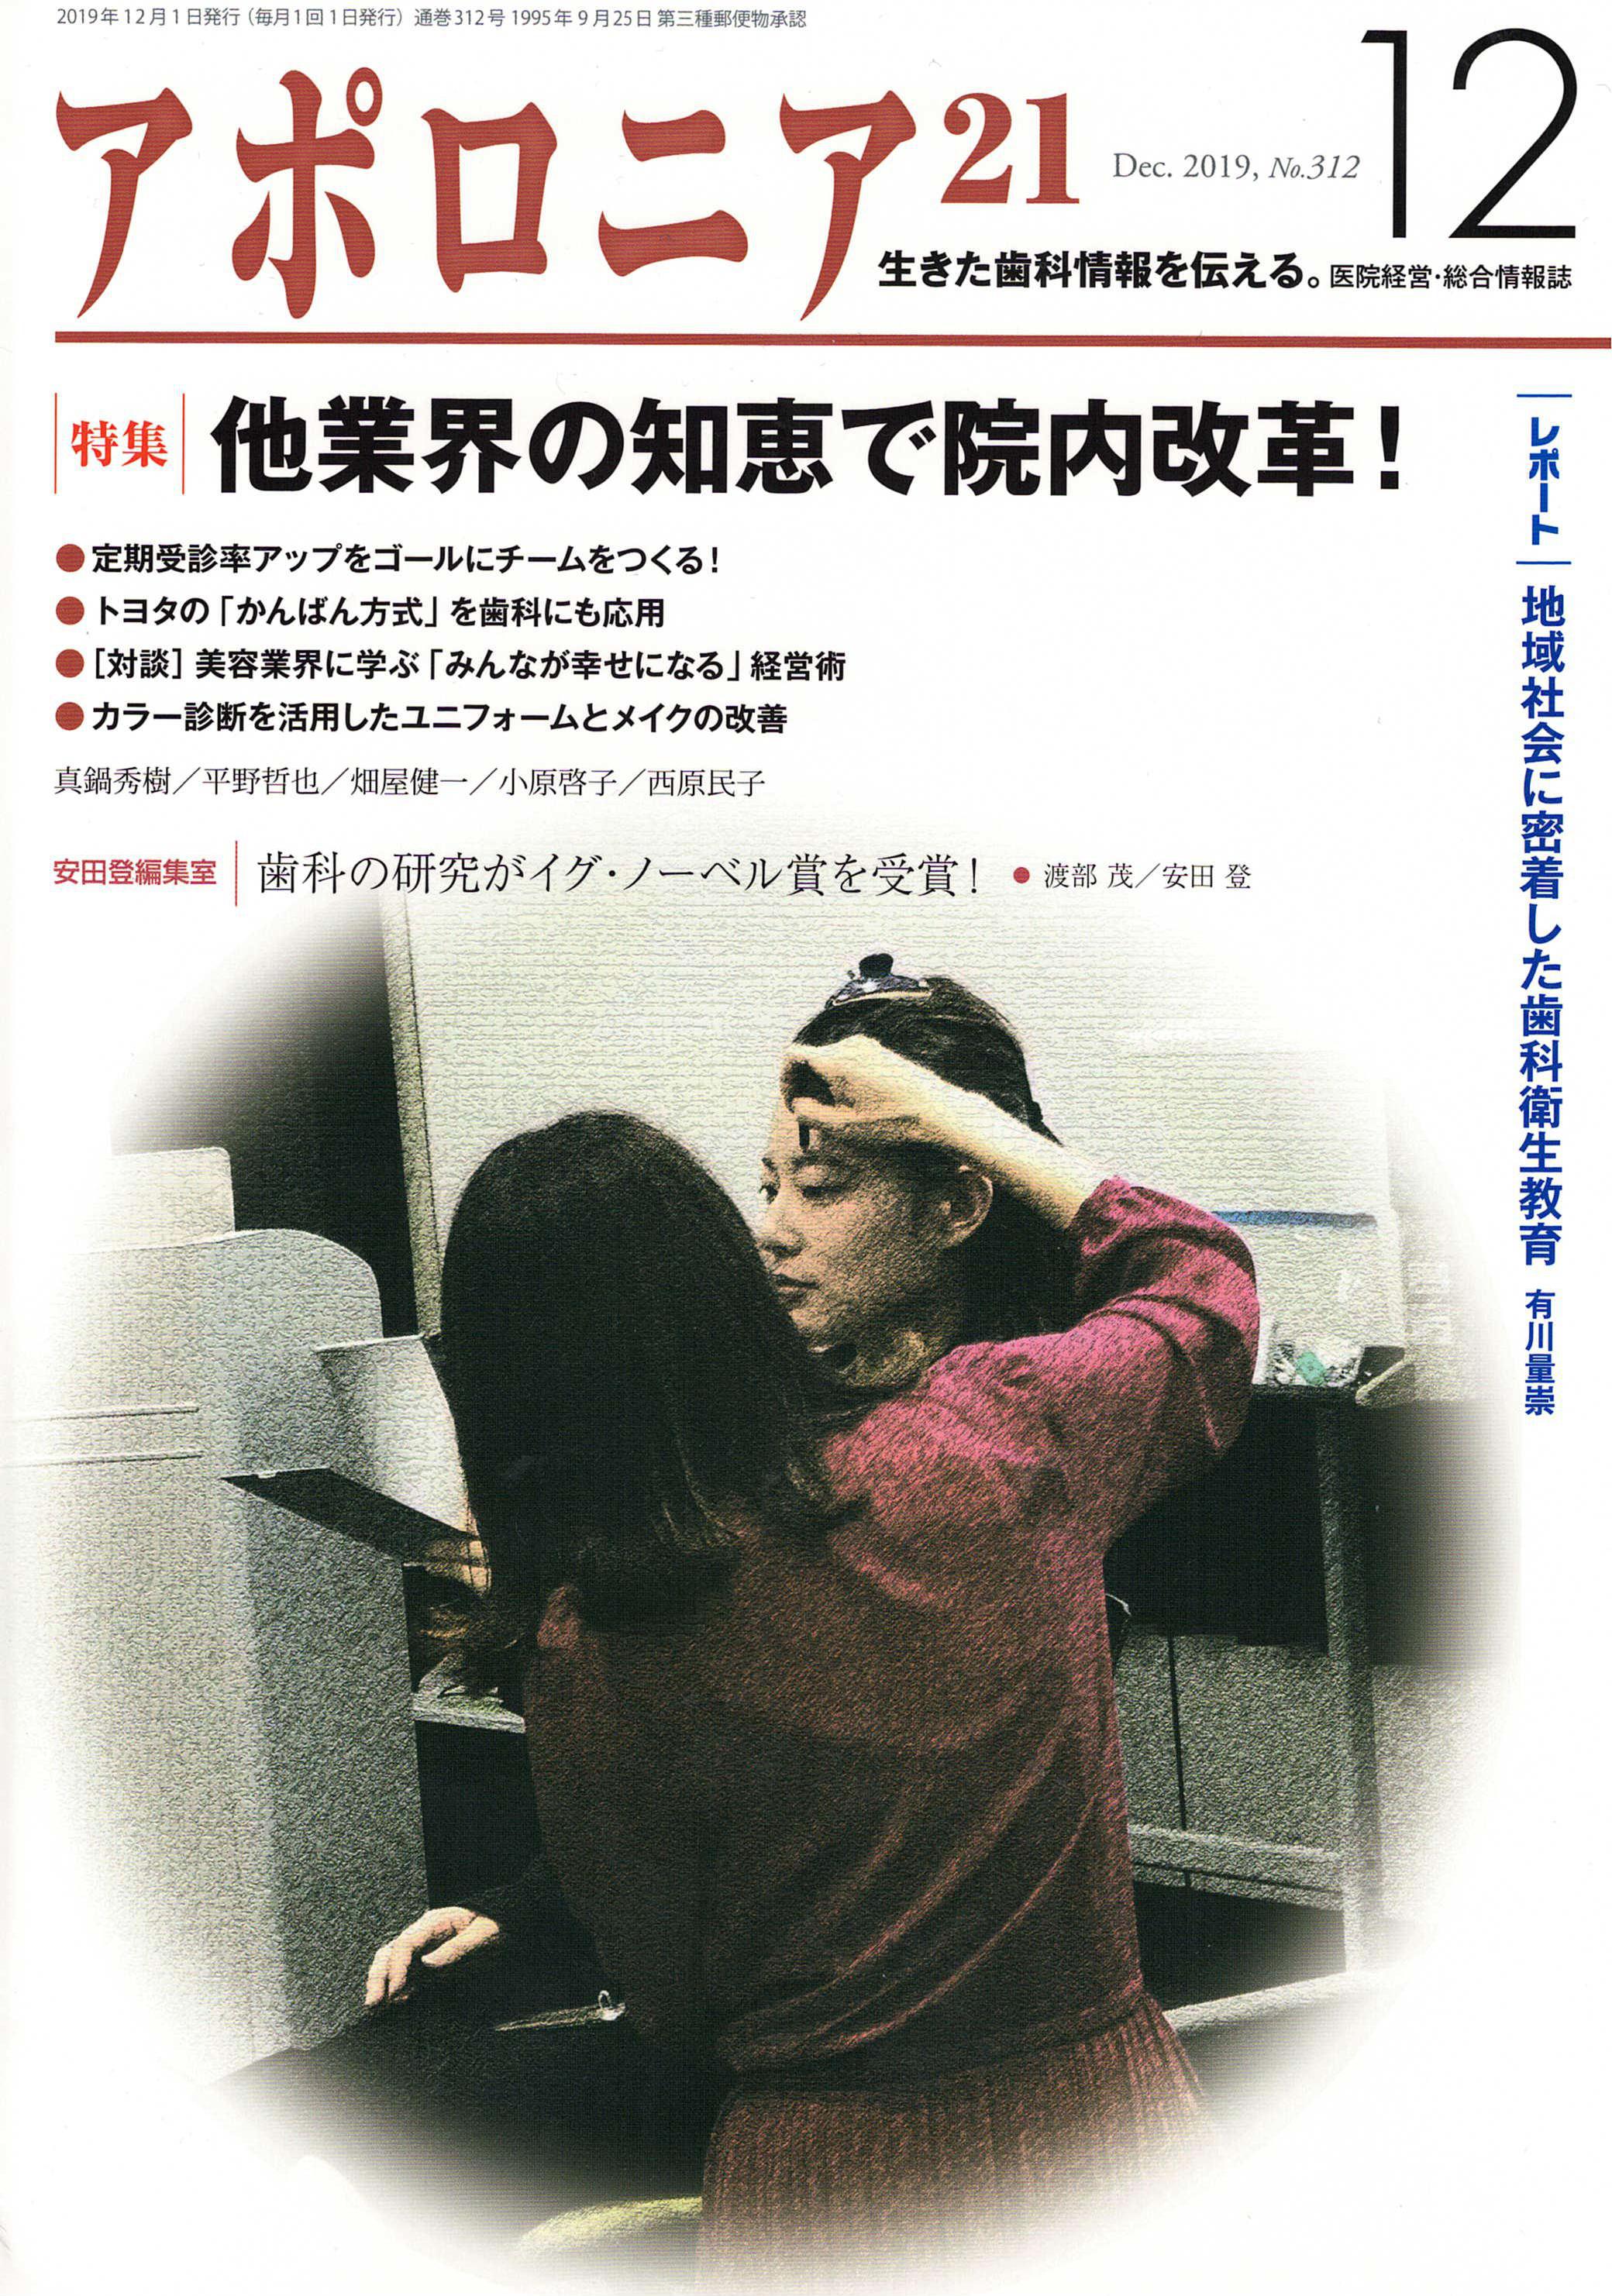 日本歯科新聞社アポロニア２１の１２月号に掲載されました。